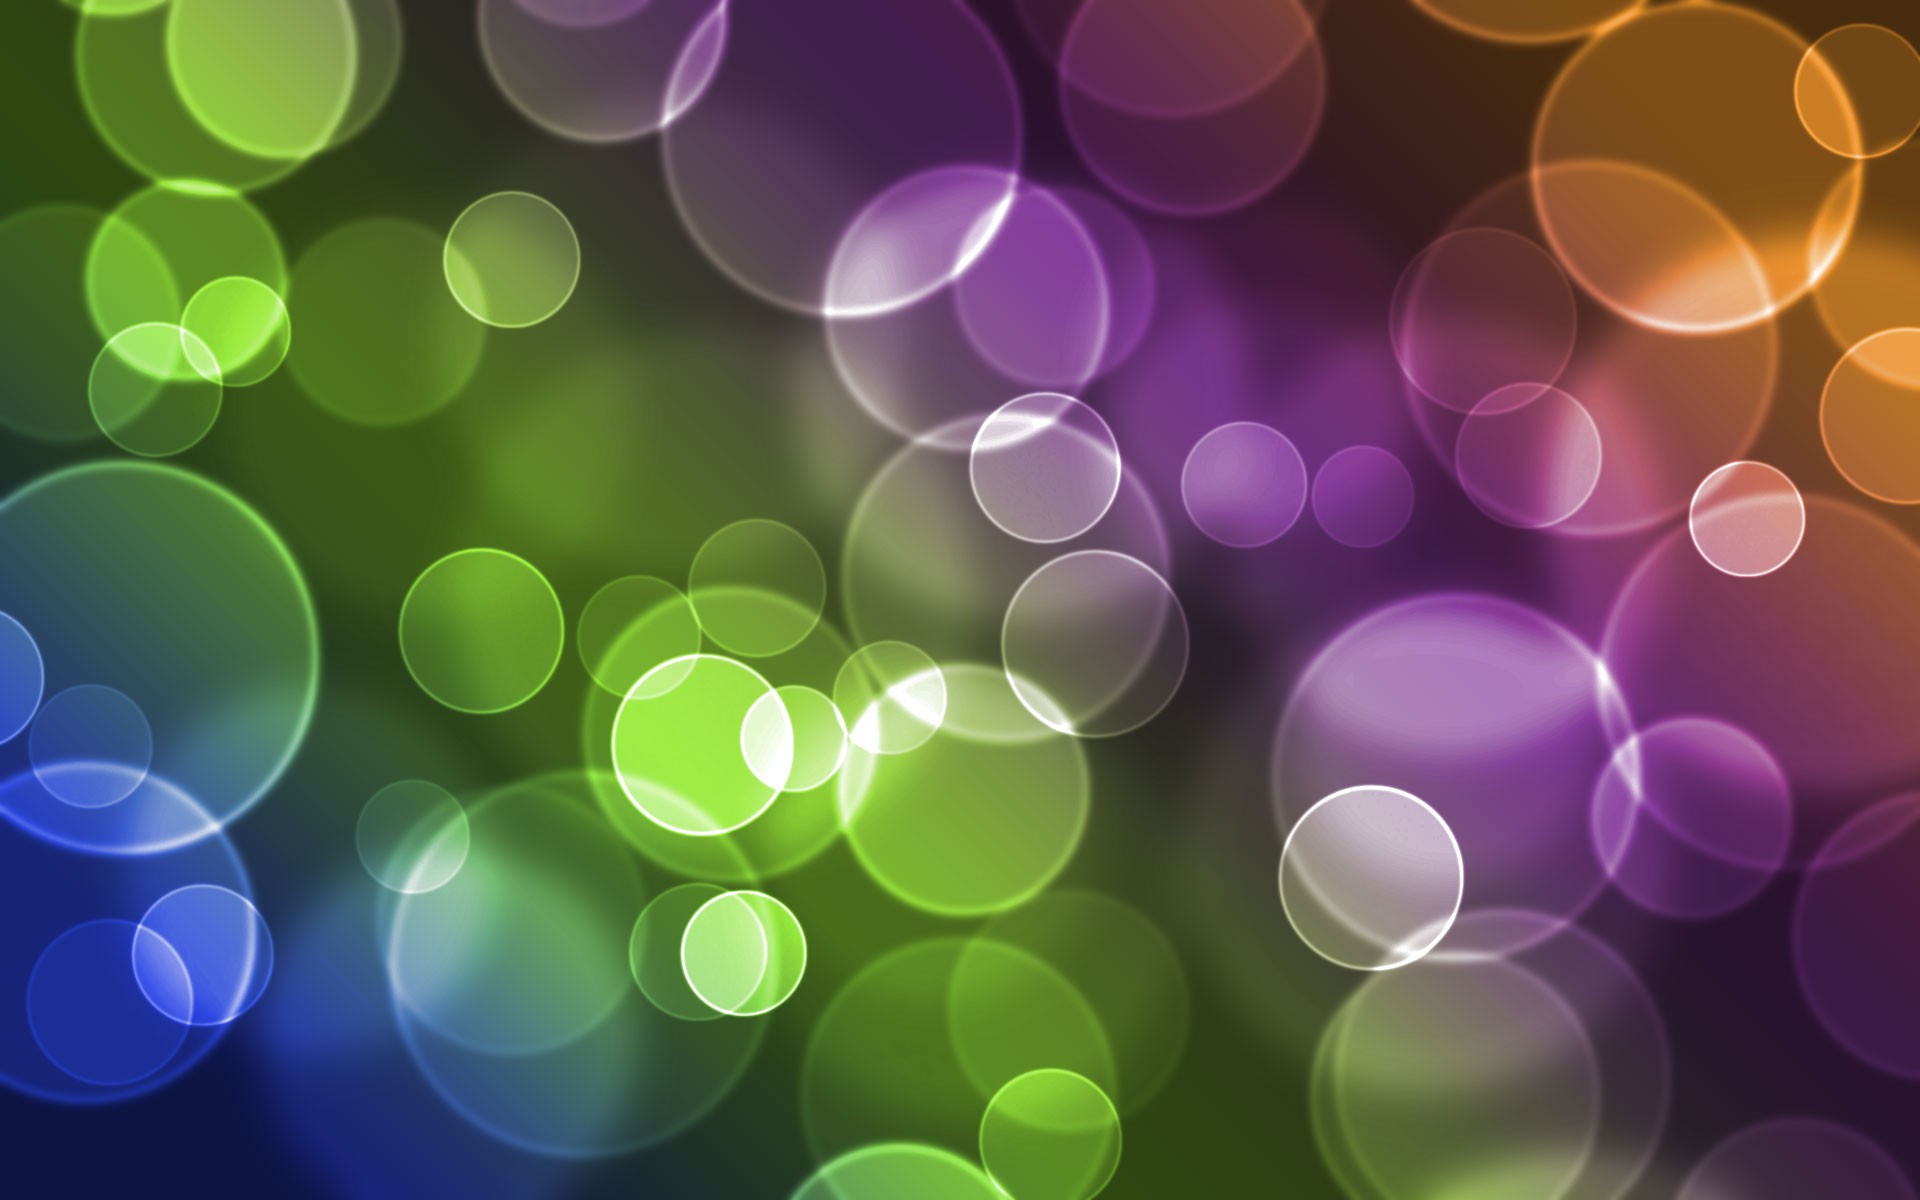 wallpaper themen für android,grün,lila,violett,licht,kreis